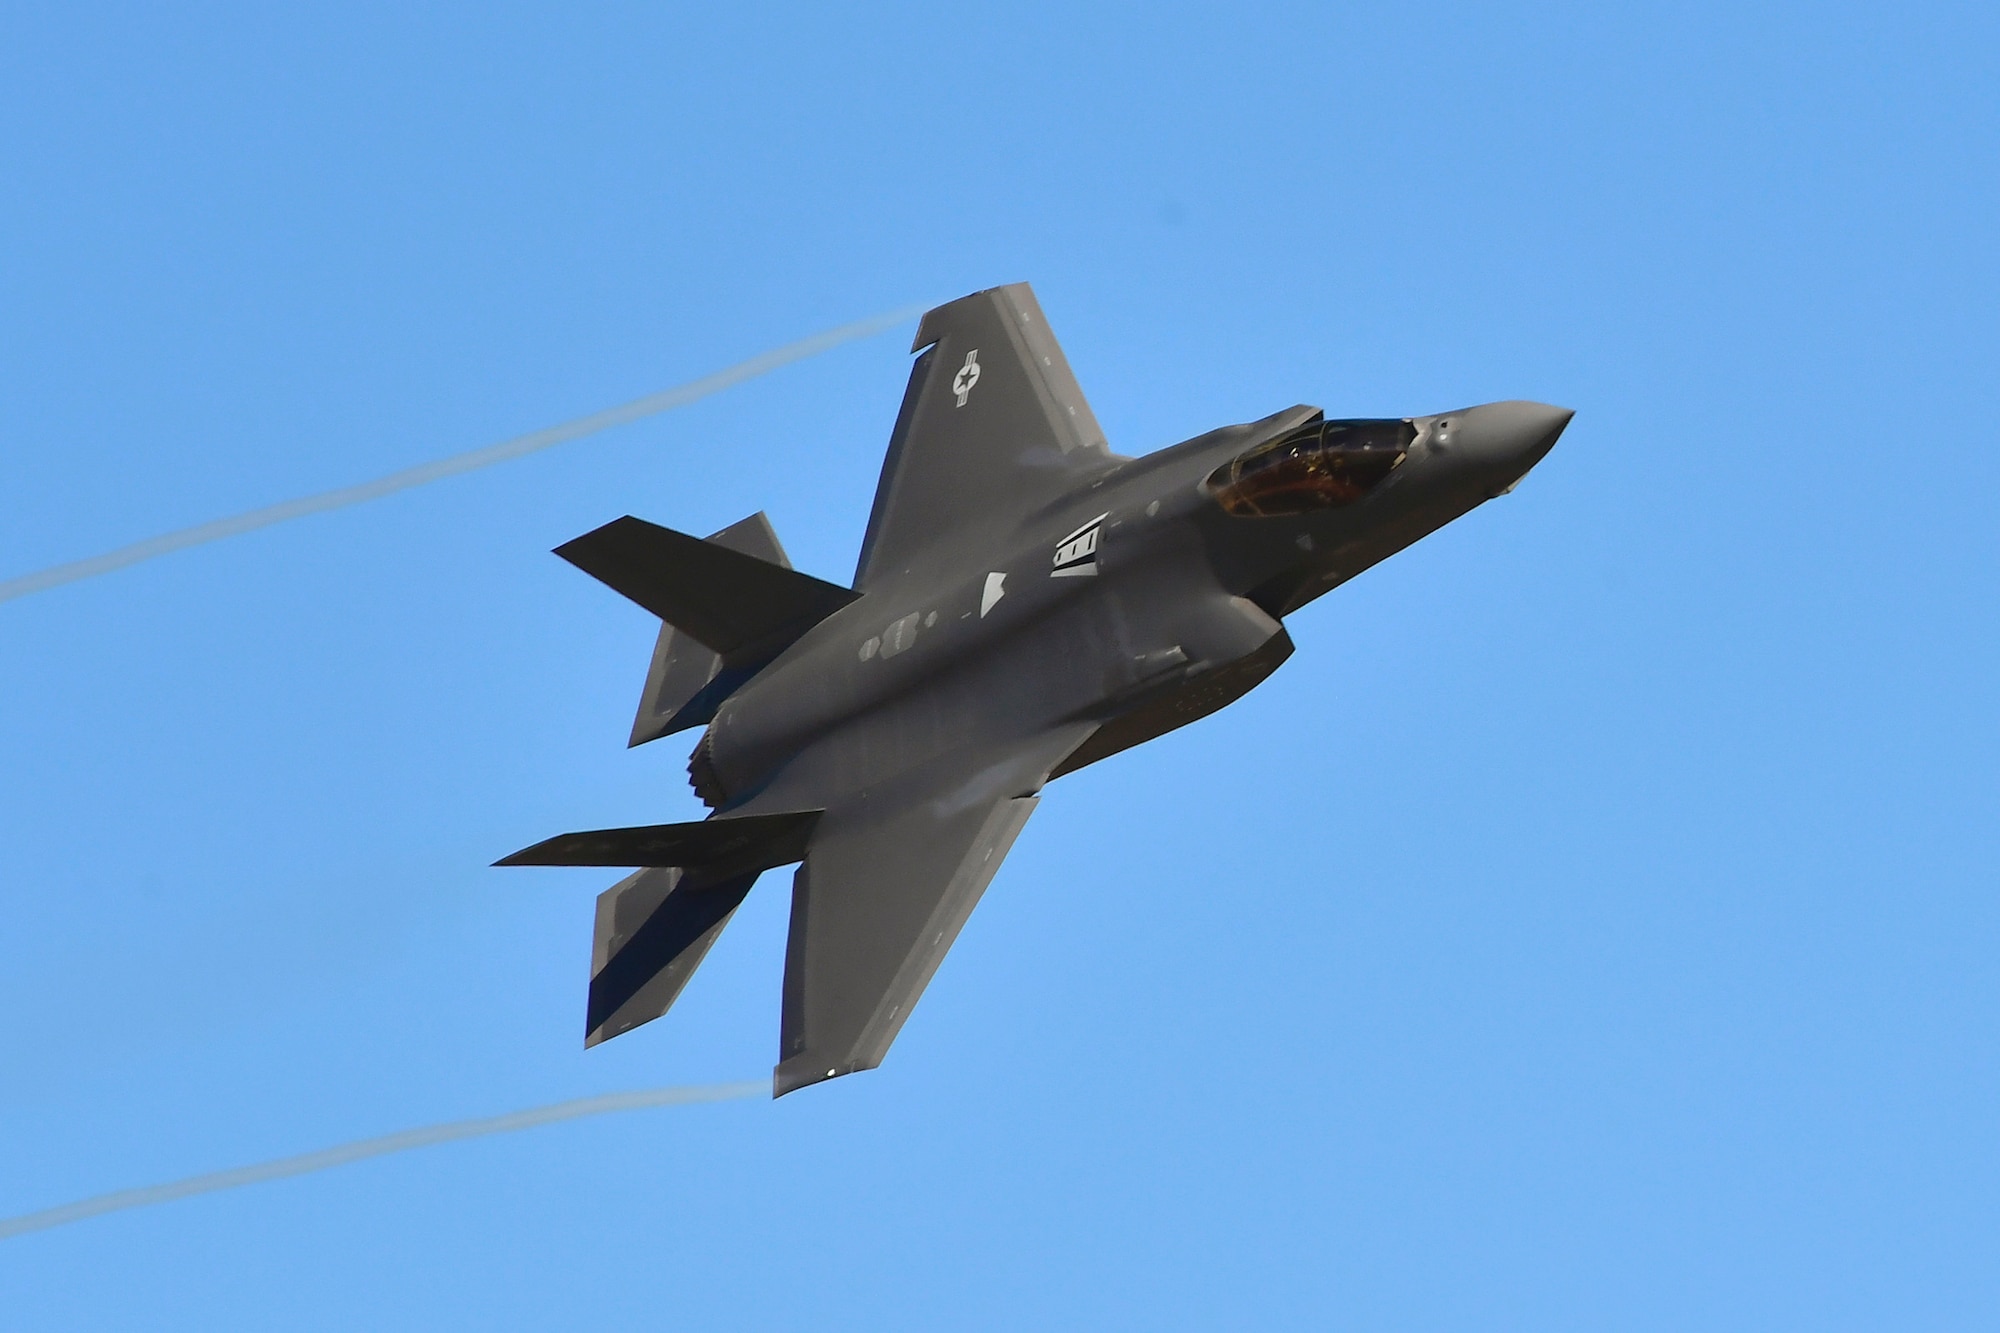 A photo of an F-35A Lightning II